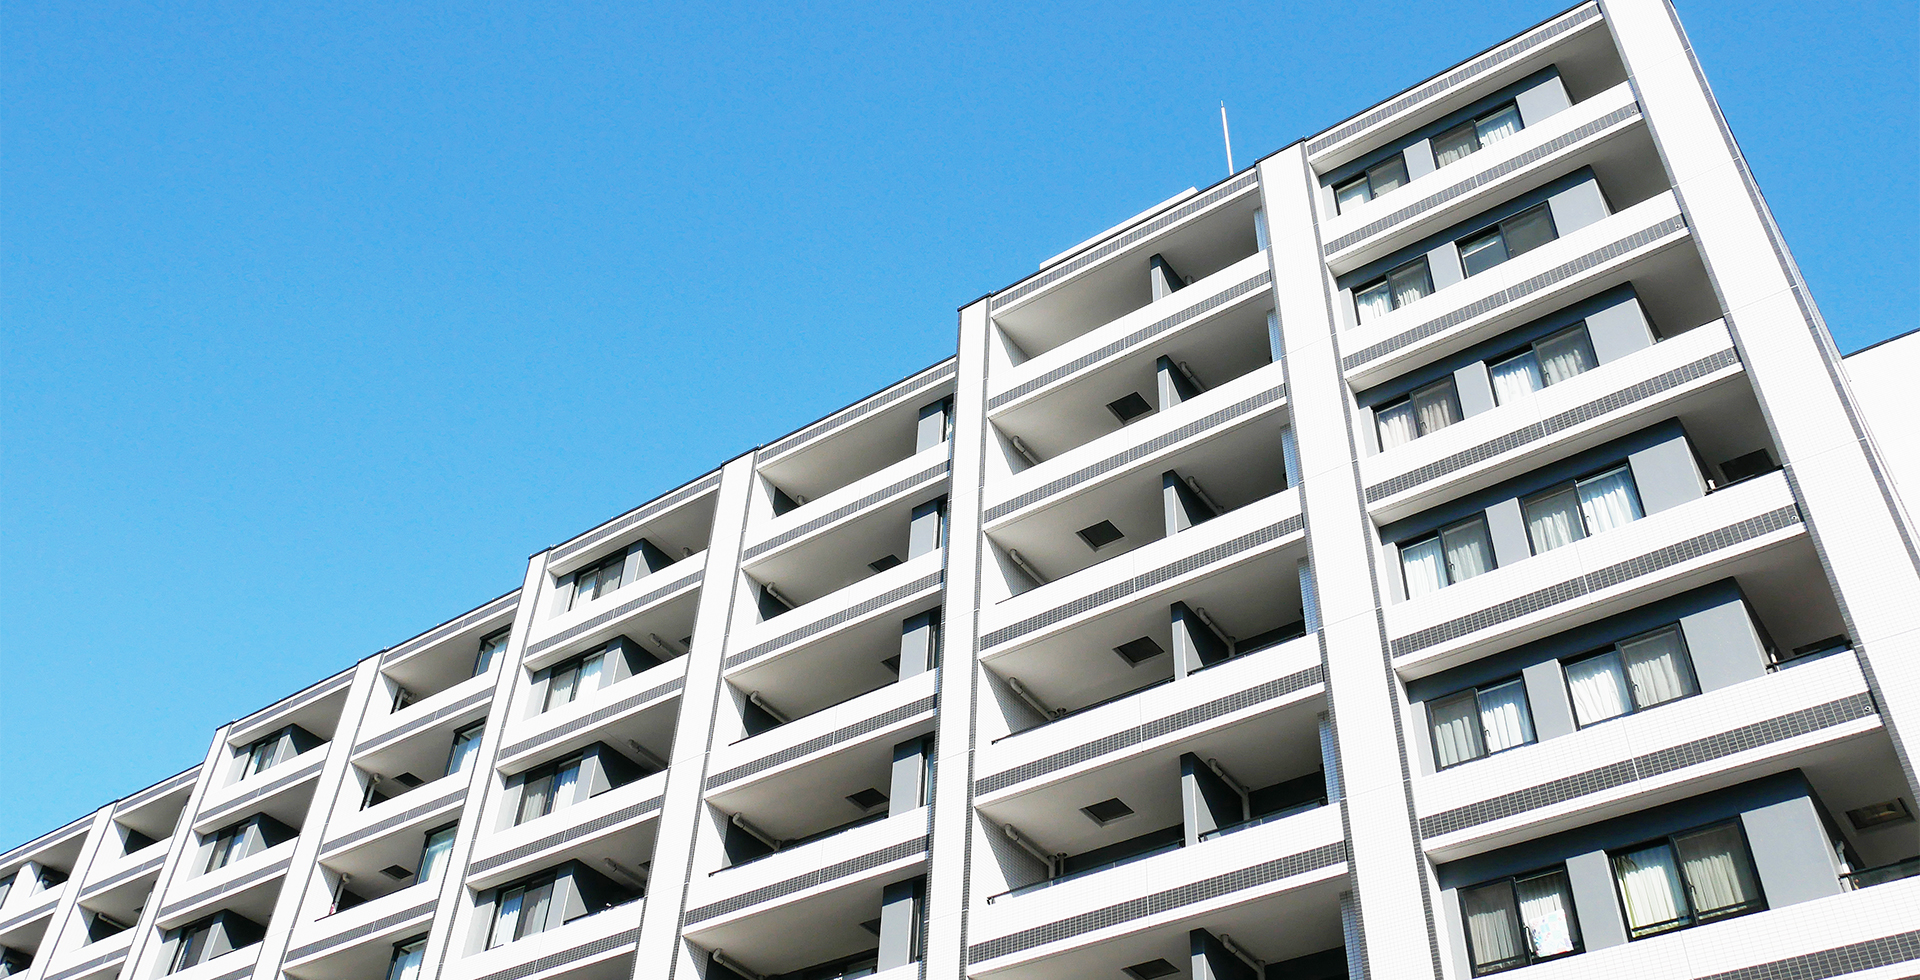 東京都調布市の外壁や屋根の塗装・防水工事と調査を行うAIRKIXX株式会社（エアーキックス）